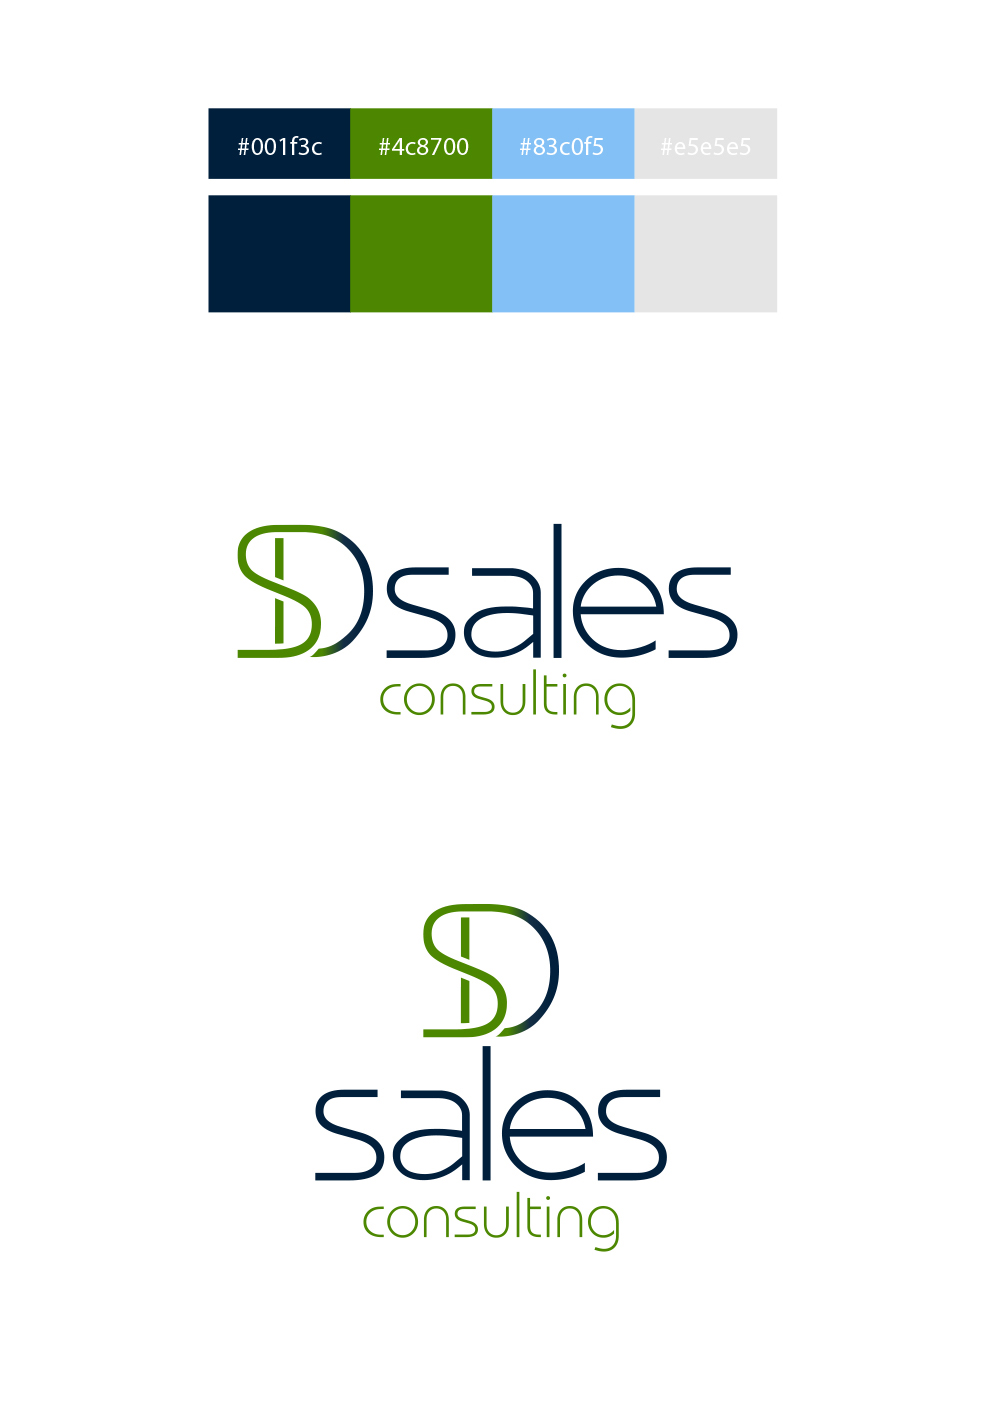 criacao-de-logotipo-SD-Sales-cores